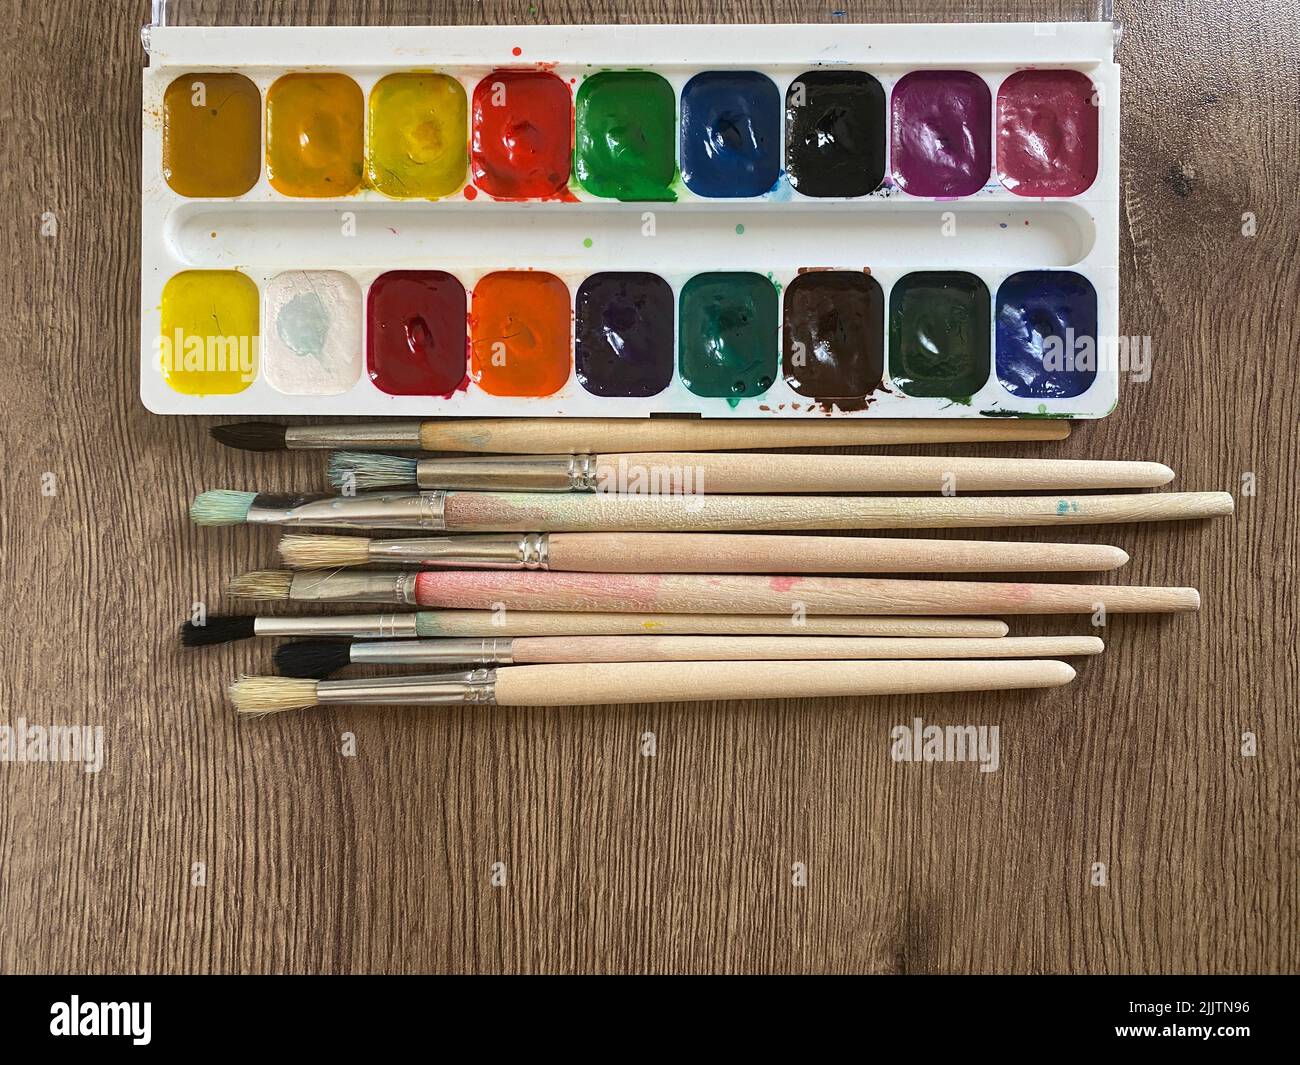 Eine Reihe verschiedener Pinsel und Aquarellfarben auf einer hölzernen Oberfläche Stockfoto